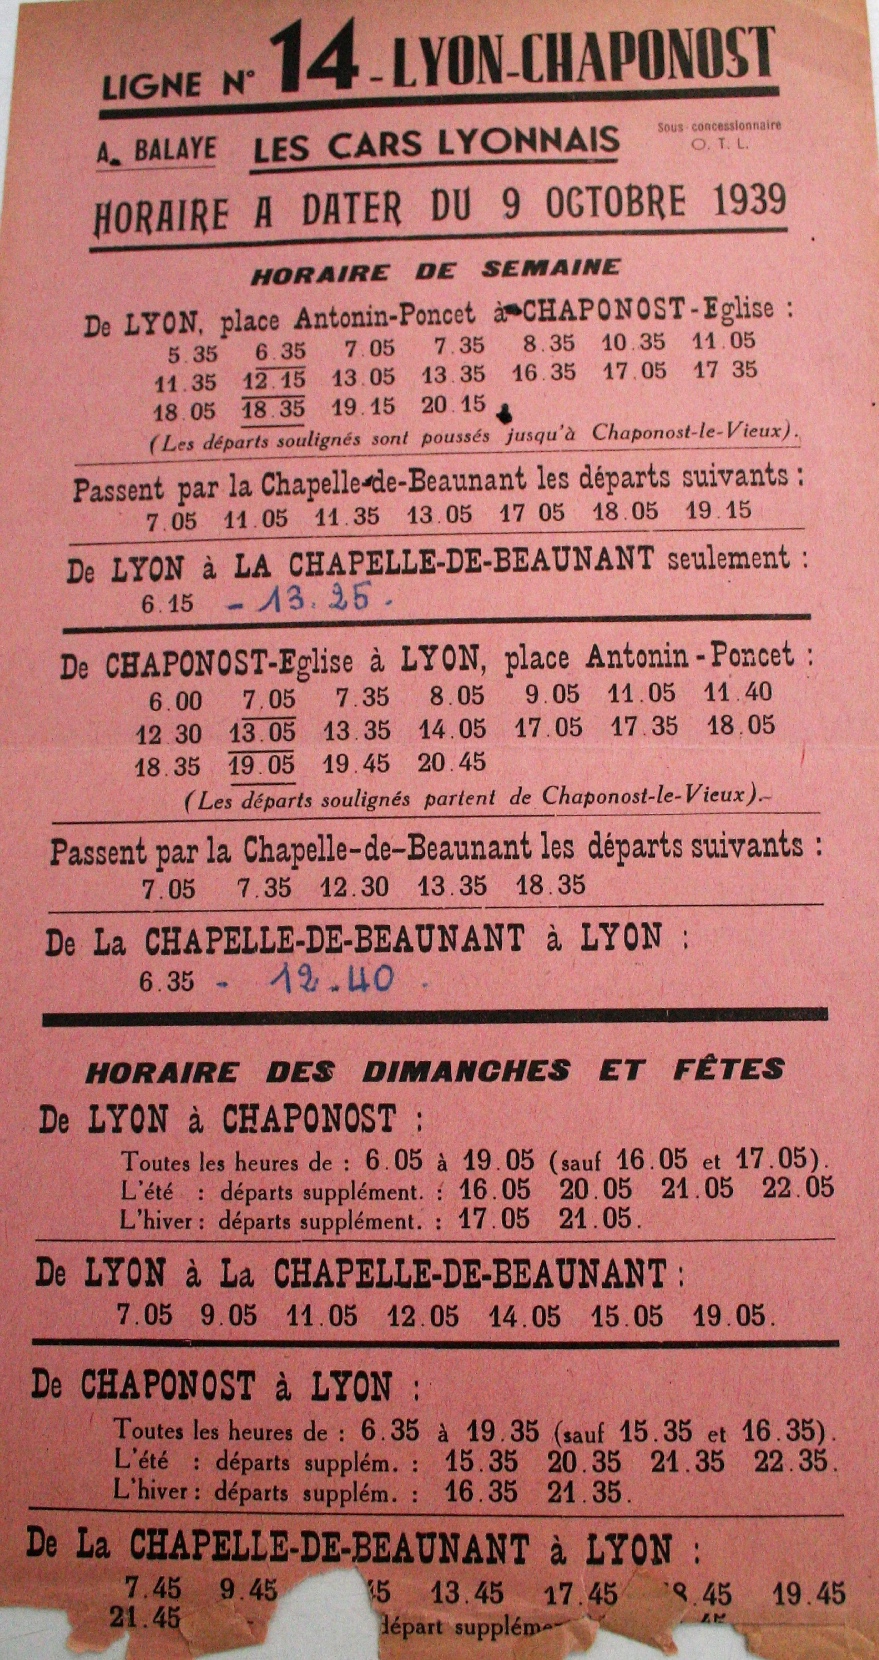 1939 timetable Lyon-Chaponost